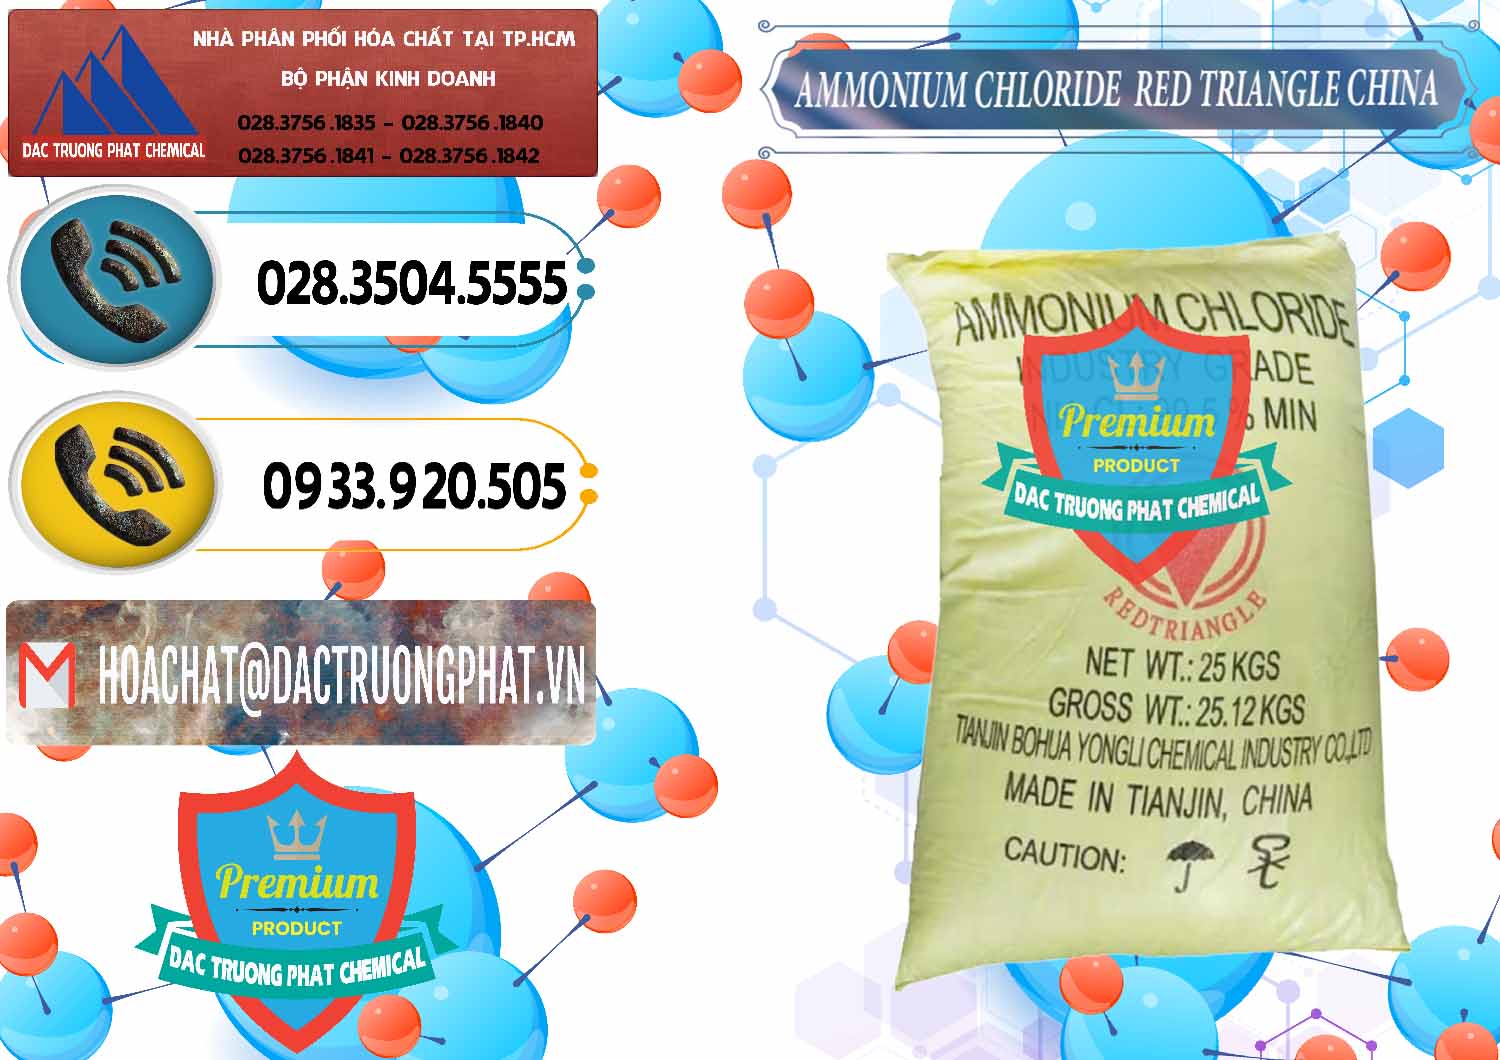 Công ty cung cấp ( bán ) Ammonium Chloride - Muối Lạnh NH4CL Red Triangle Trung Quốc China - 0377 - Cty chuyên kinh doanh - cung cấp hóa chất tại TP.HCM - hoachatdetnhuom.vn